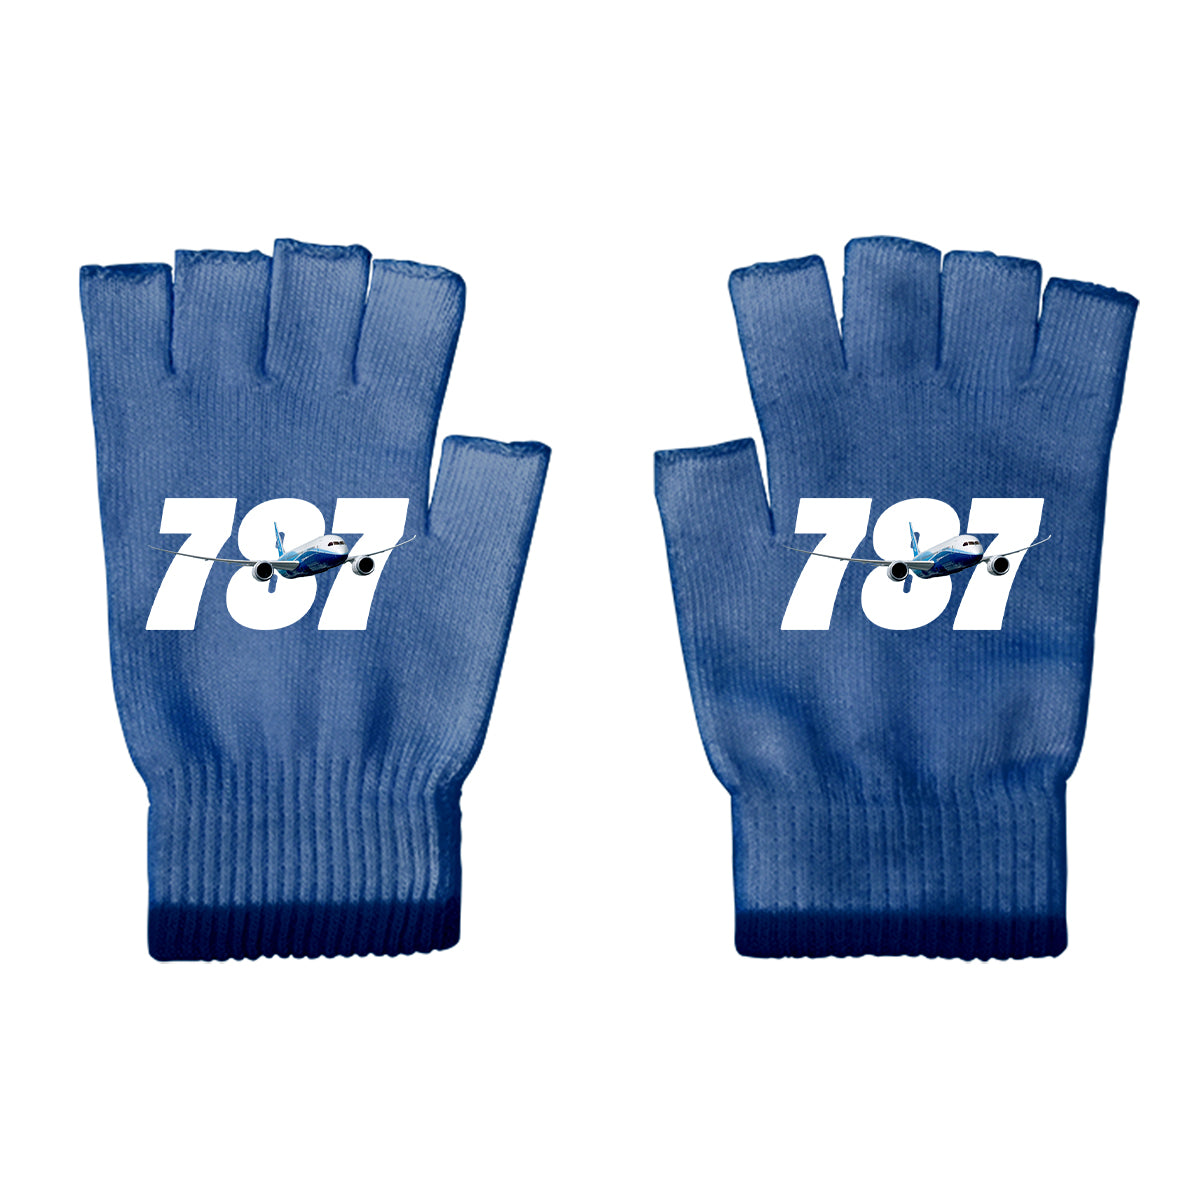 Super Boeing 787 Designed Cut Gloves